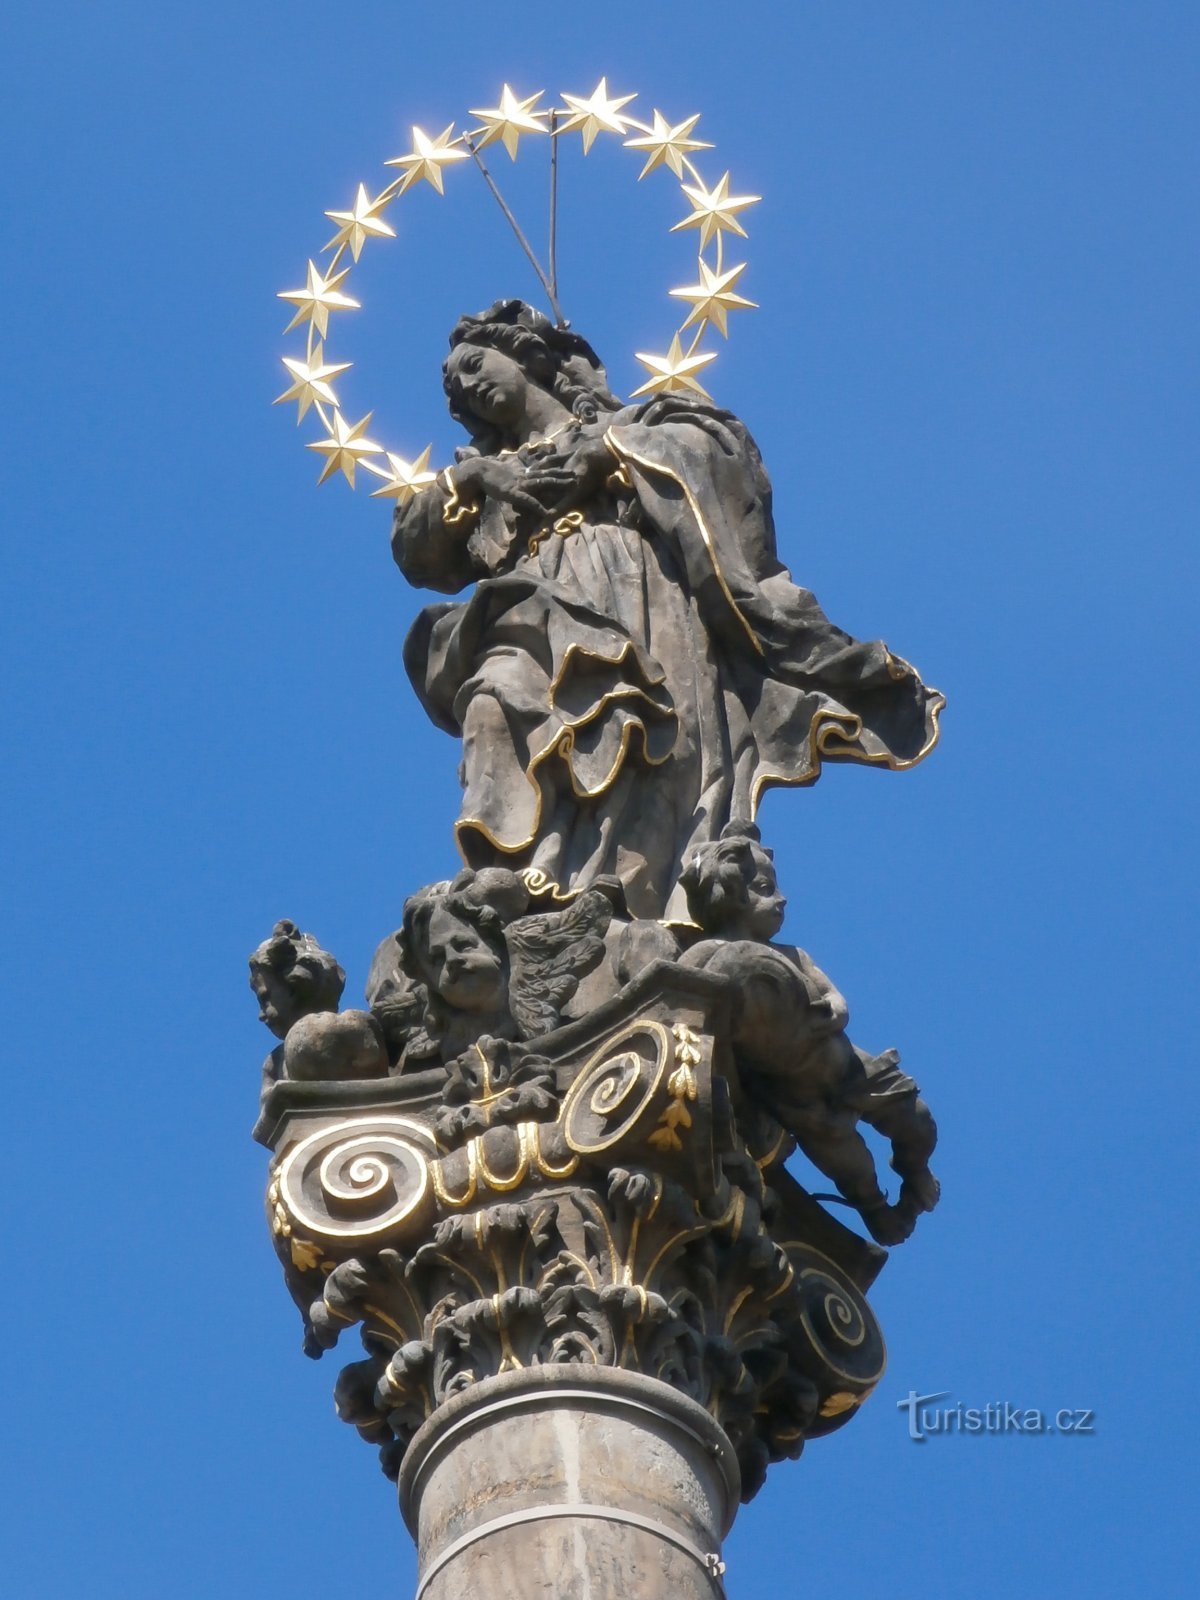 Columna mariana (Hradec Králové, 23.6.2014/XNUMX/XNUMX)